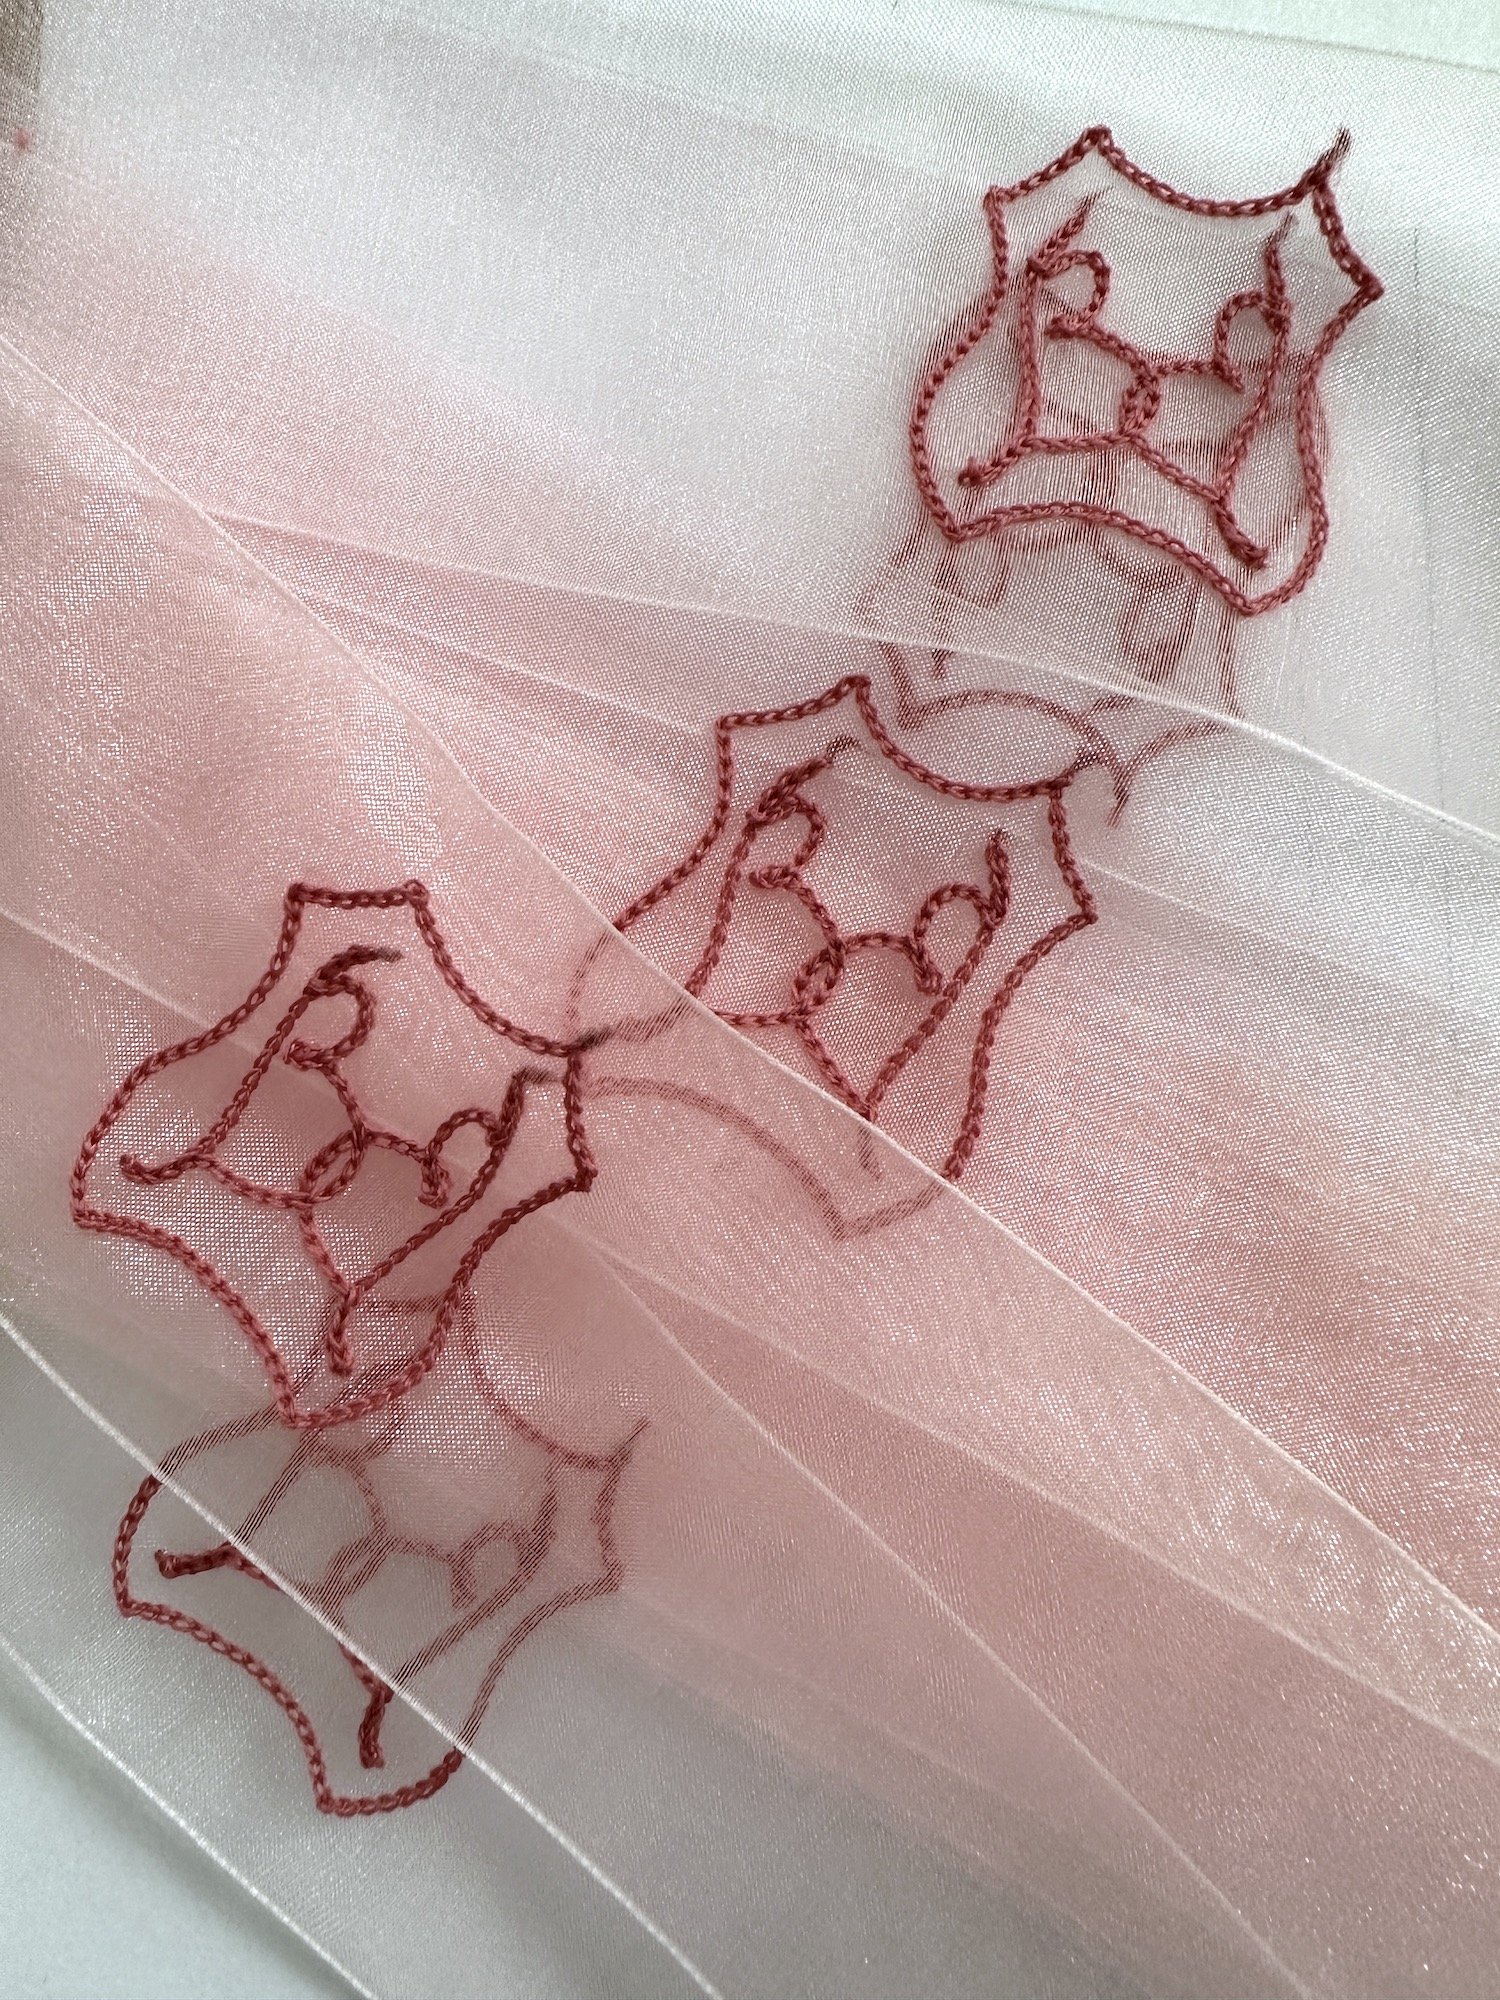 Chainstitch embroidered ribbons vogue Beanie feldstein.JPG